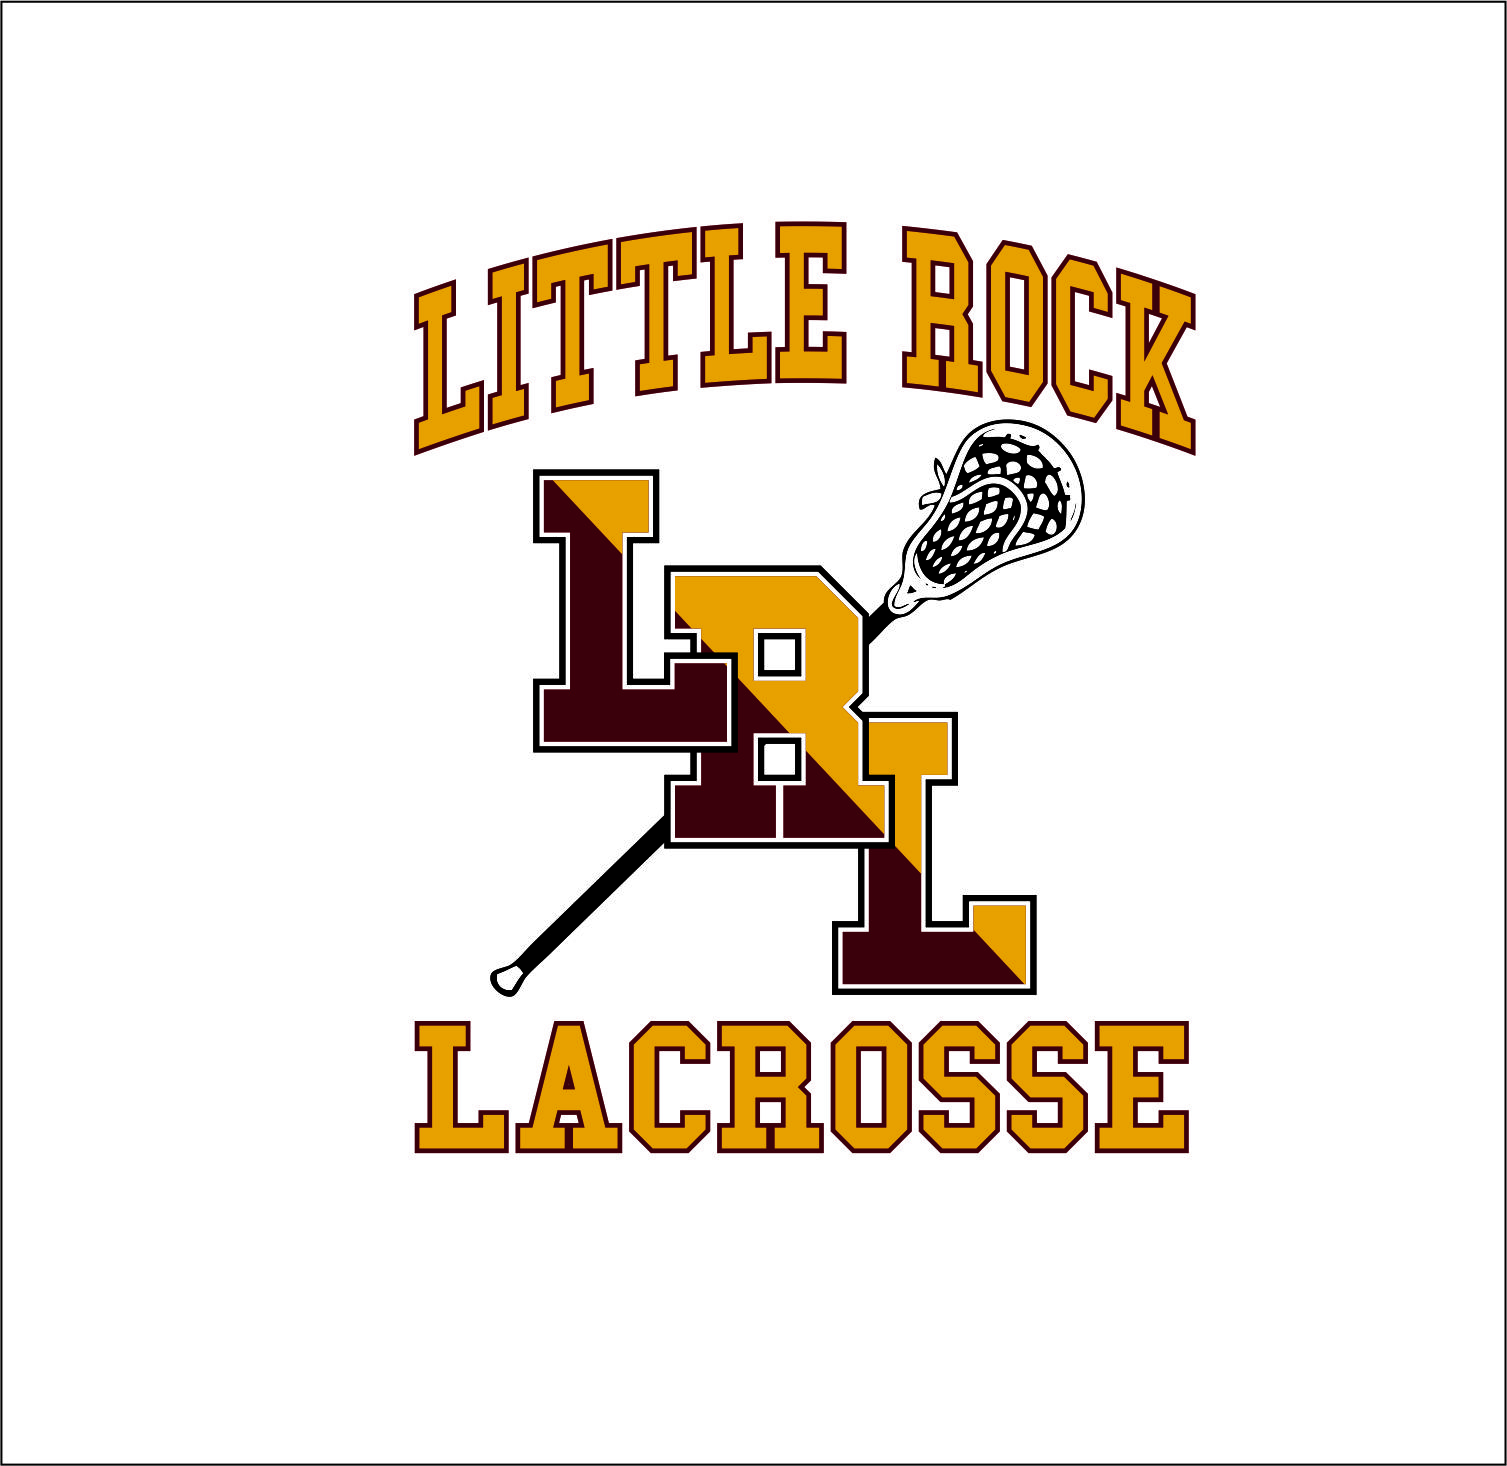  Little Rock Lacrosse 